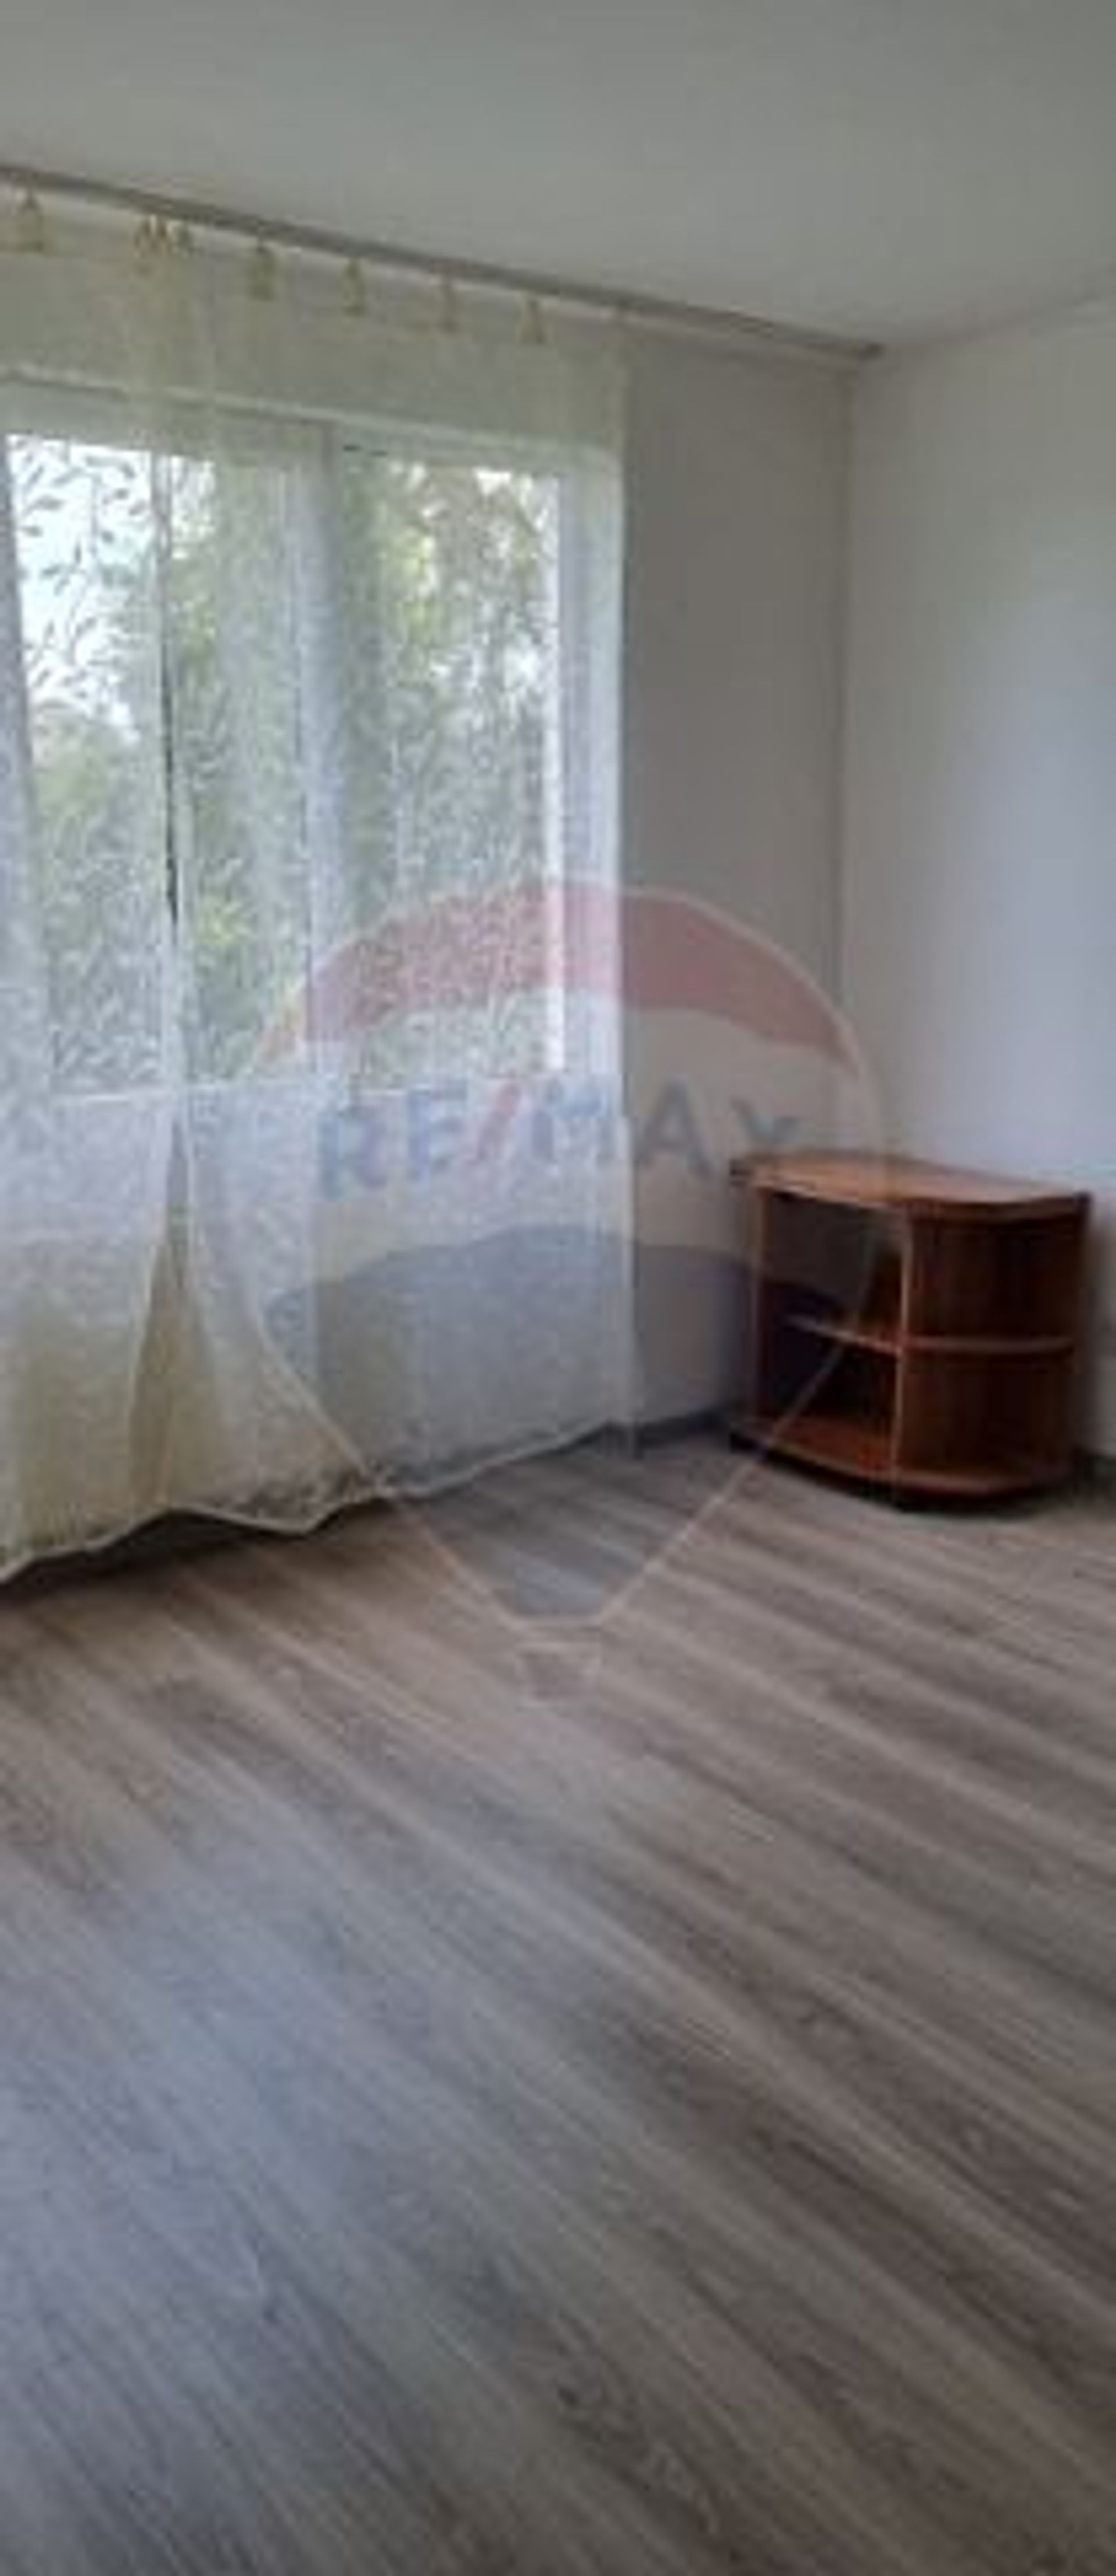 Apartament 2 camere vanzare in bloc de apartamente Maramures, Baia Mare, Independentei